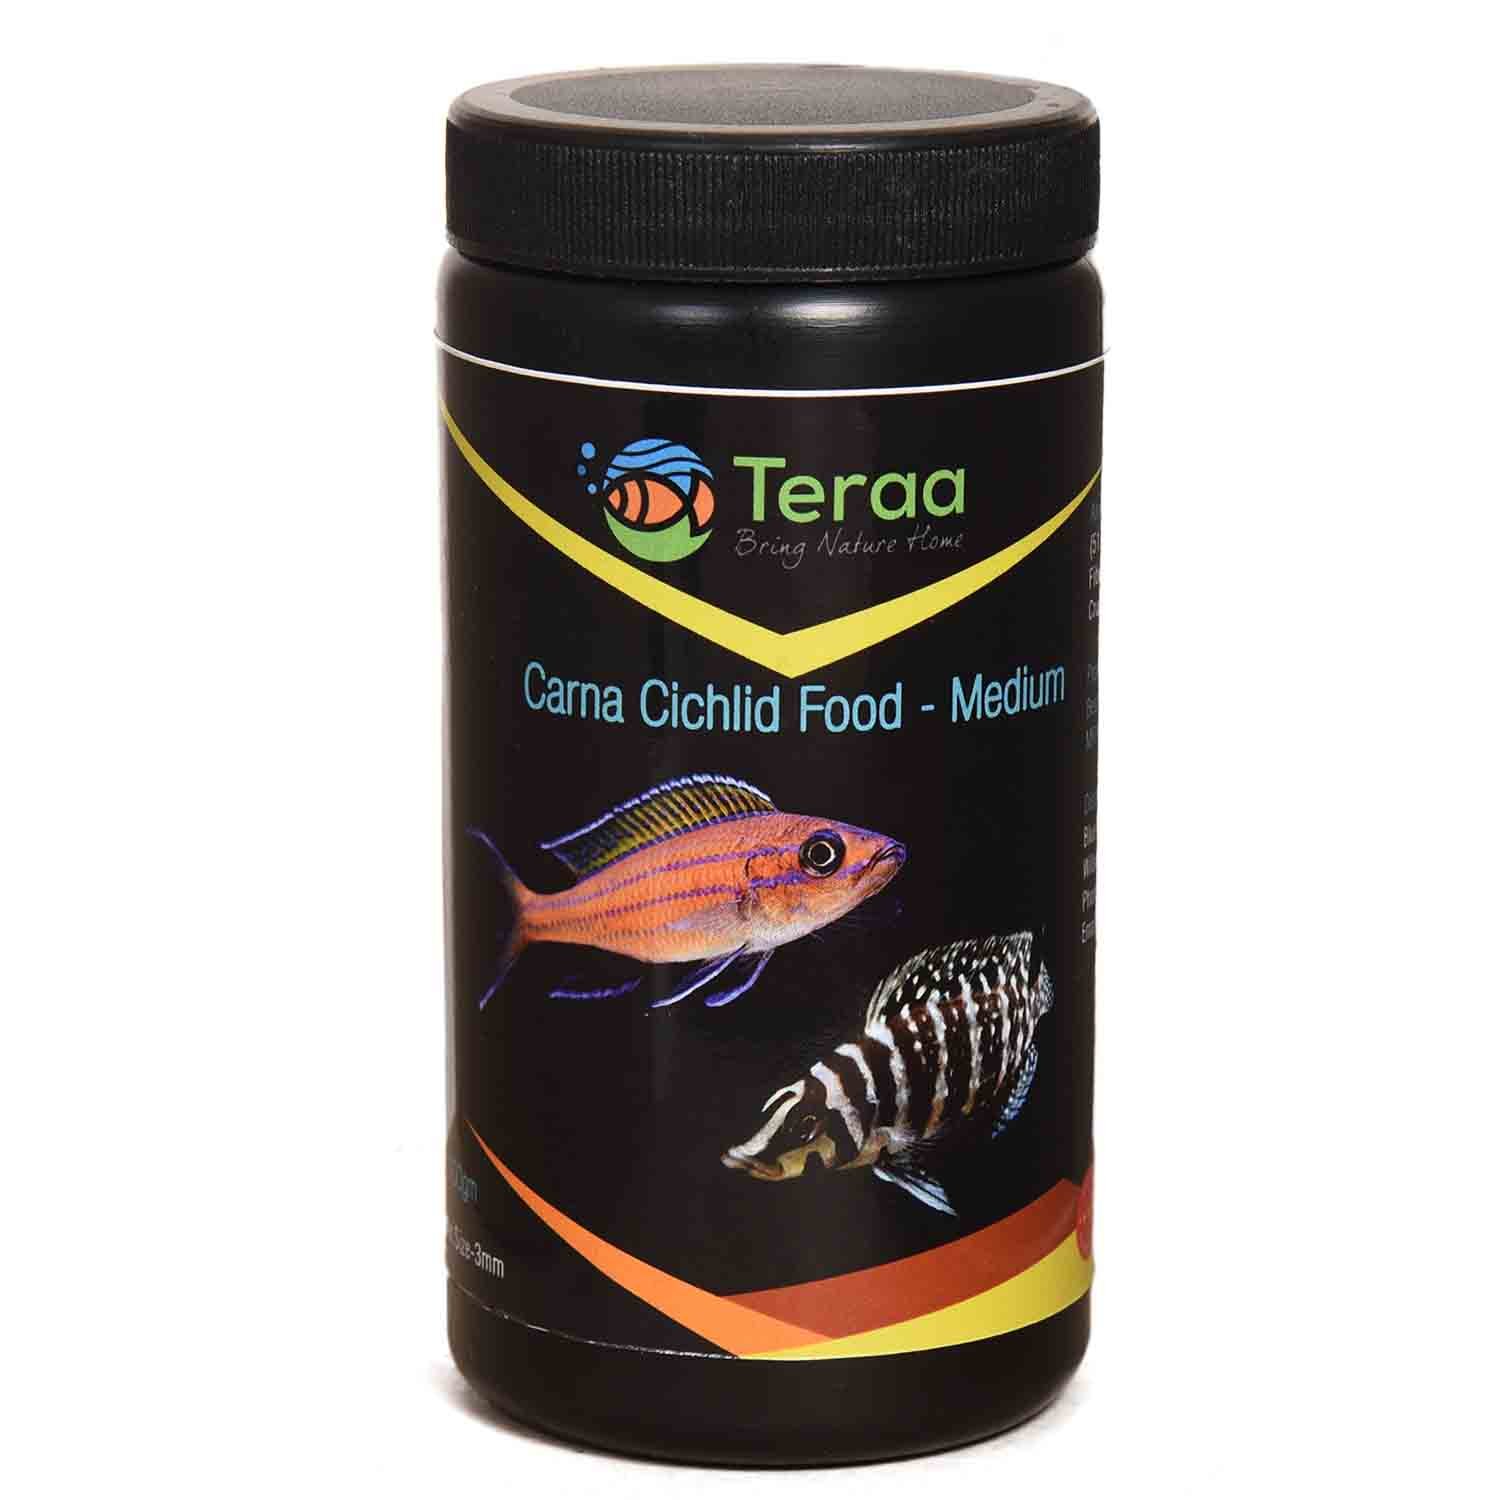 Teraa Carna Cichlid Food - Medium Fish Food 100gm Teraa